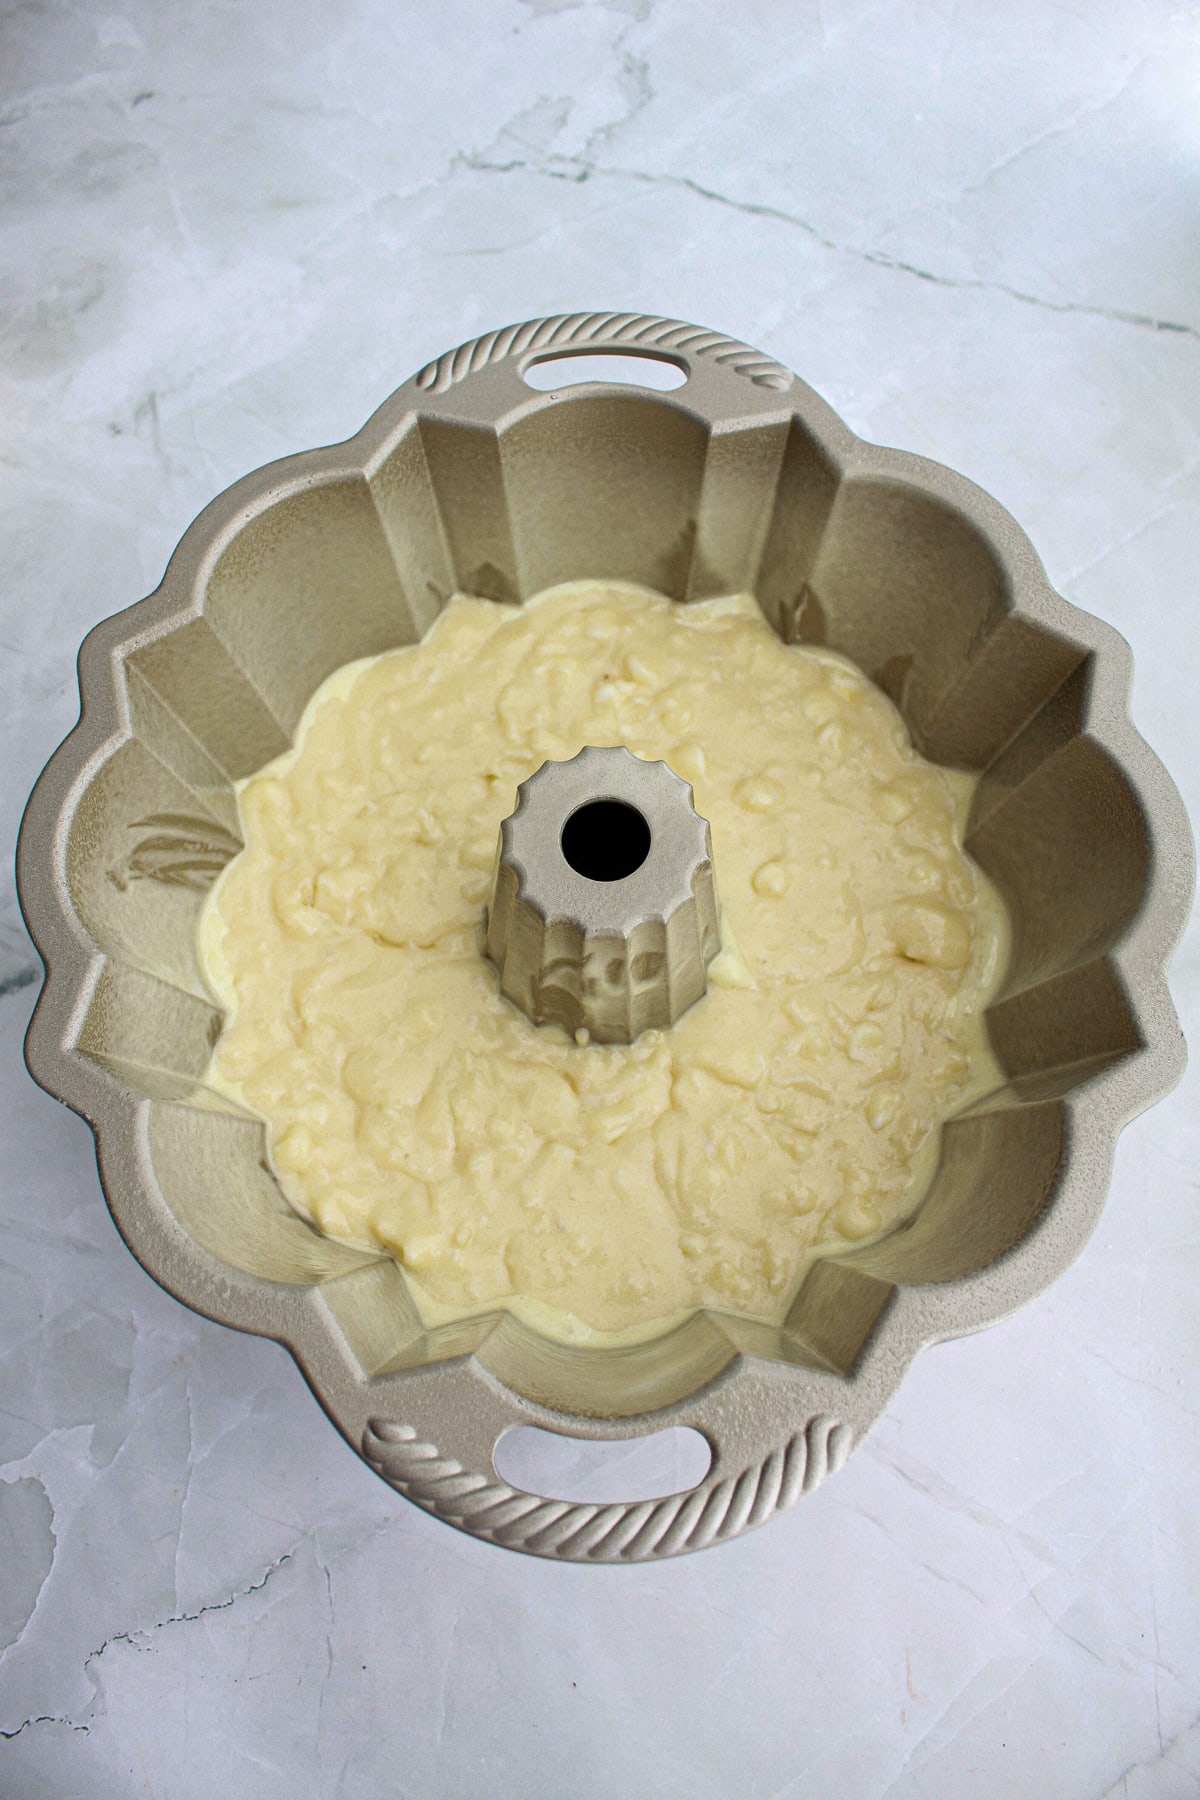 White Chocolate Coconut Bundt Cake in bundt pan